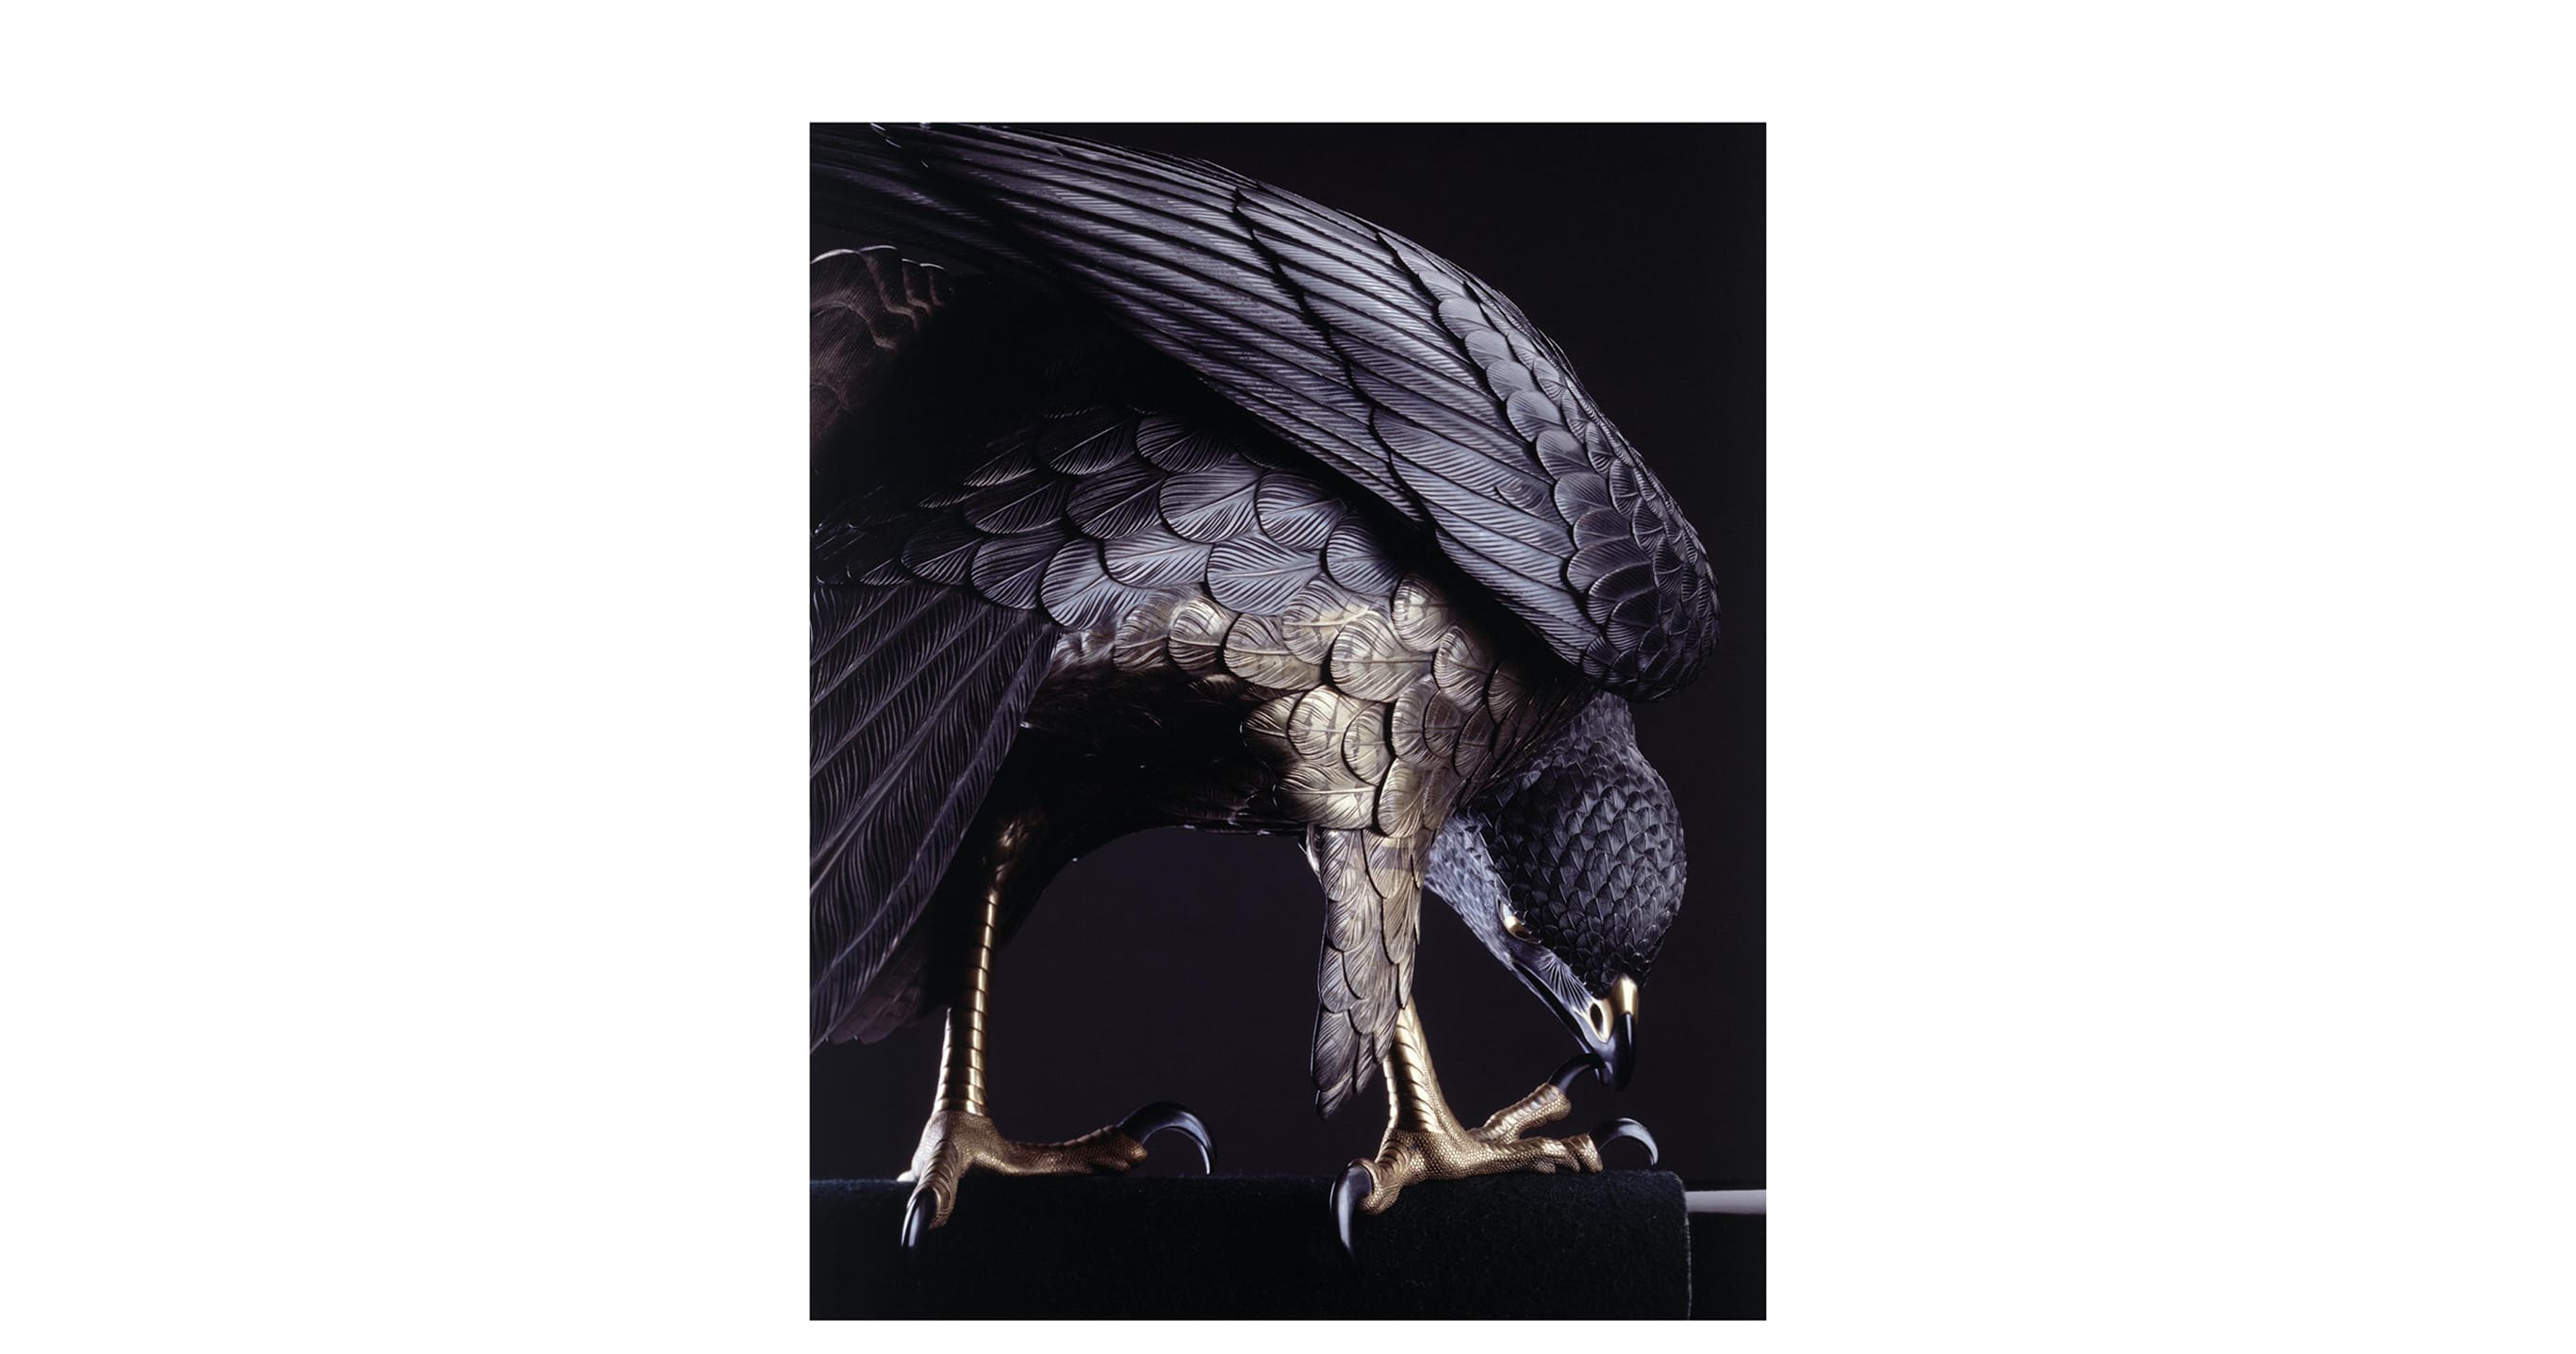 鈴木長吉《十二の鷹》1893年（部分）シカゴ万博に出展され、日本の現代美術を世界に向けて発信した代表的作品。重要文化財に指定後、初めて大公開される本作品は見どころのひとつ。